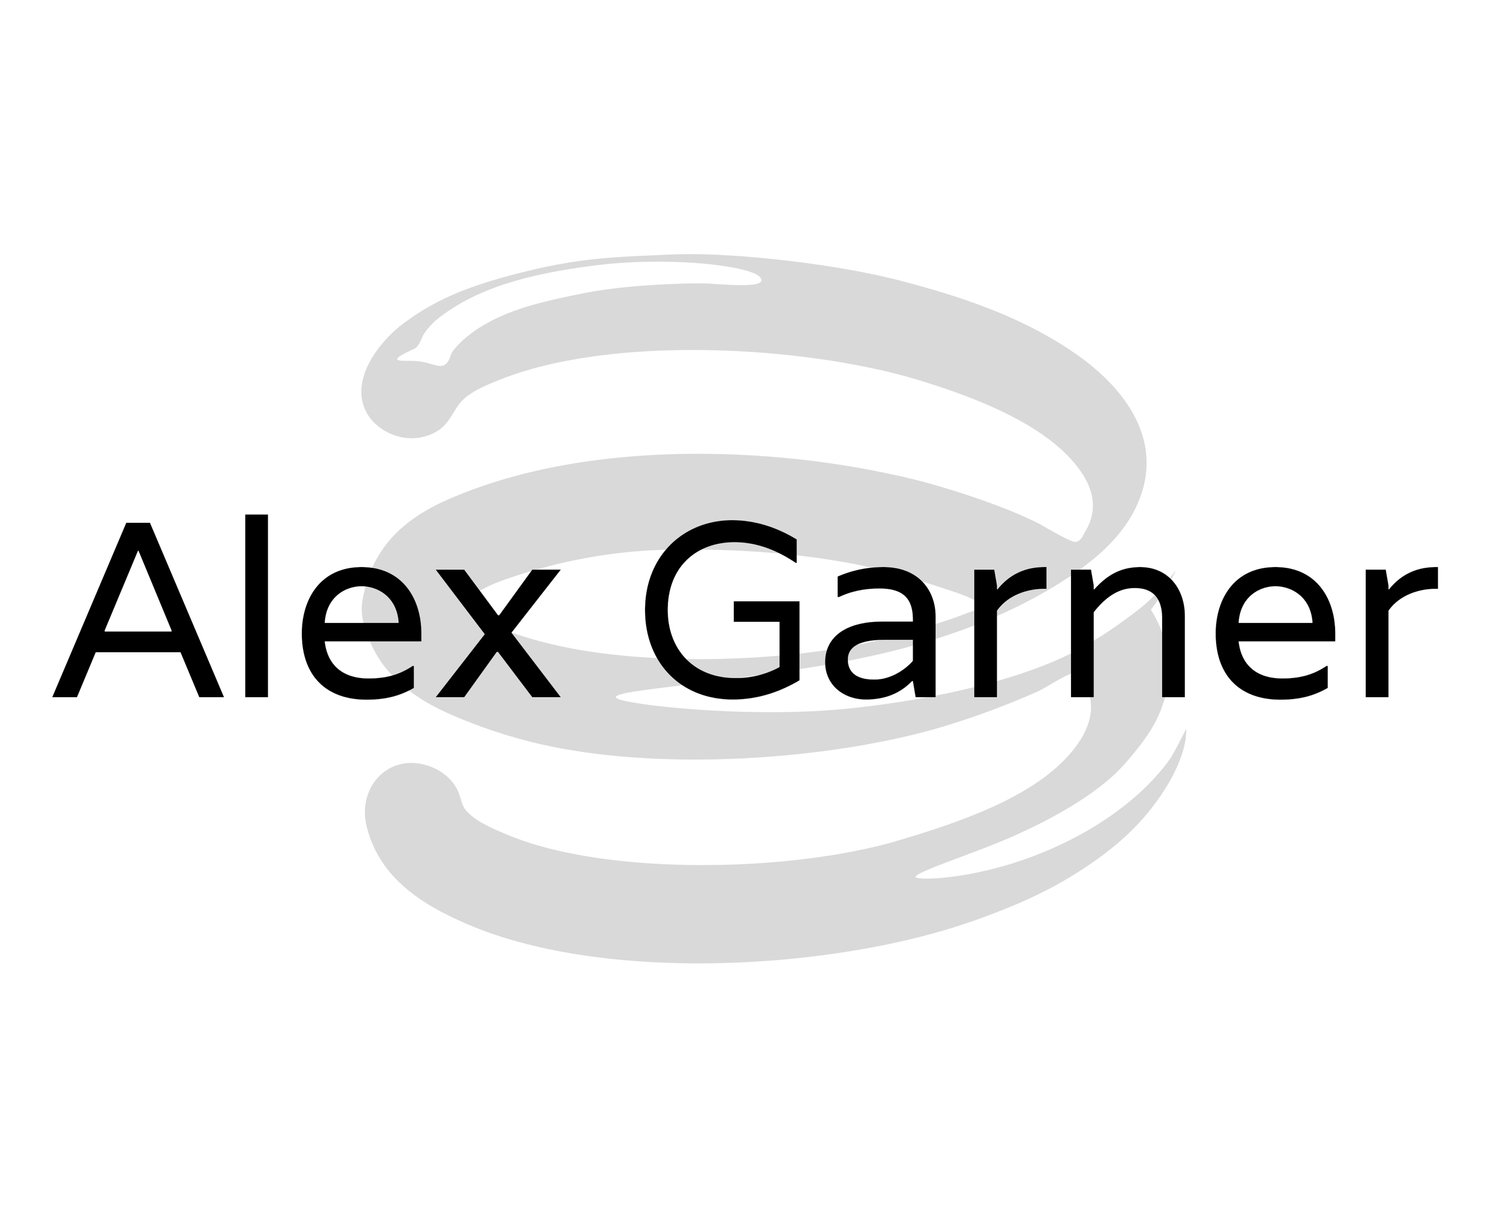 Alex Garner